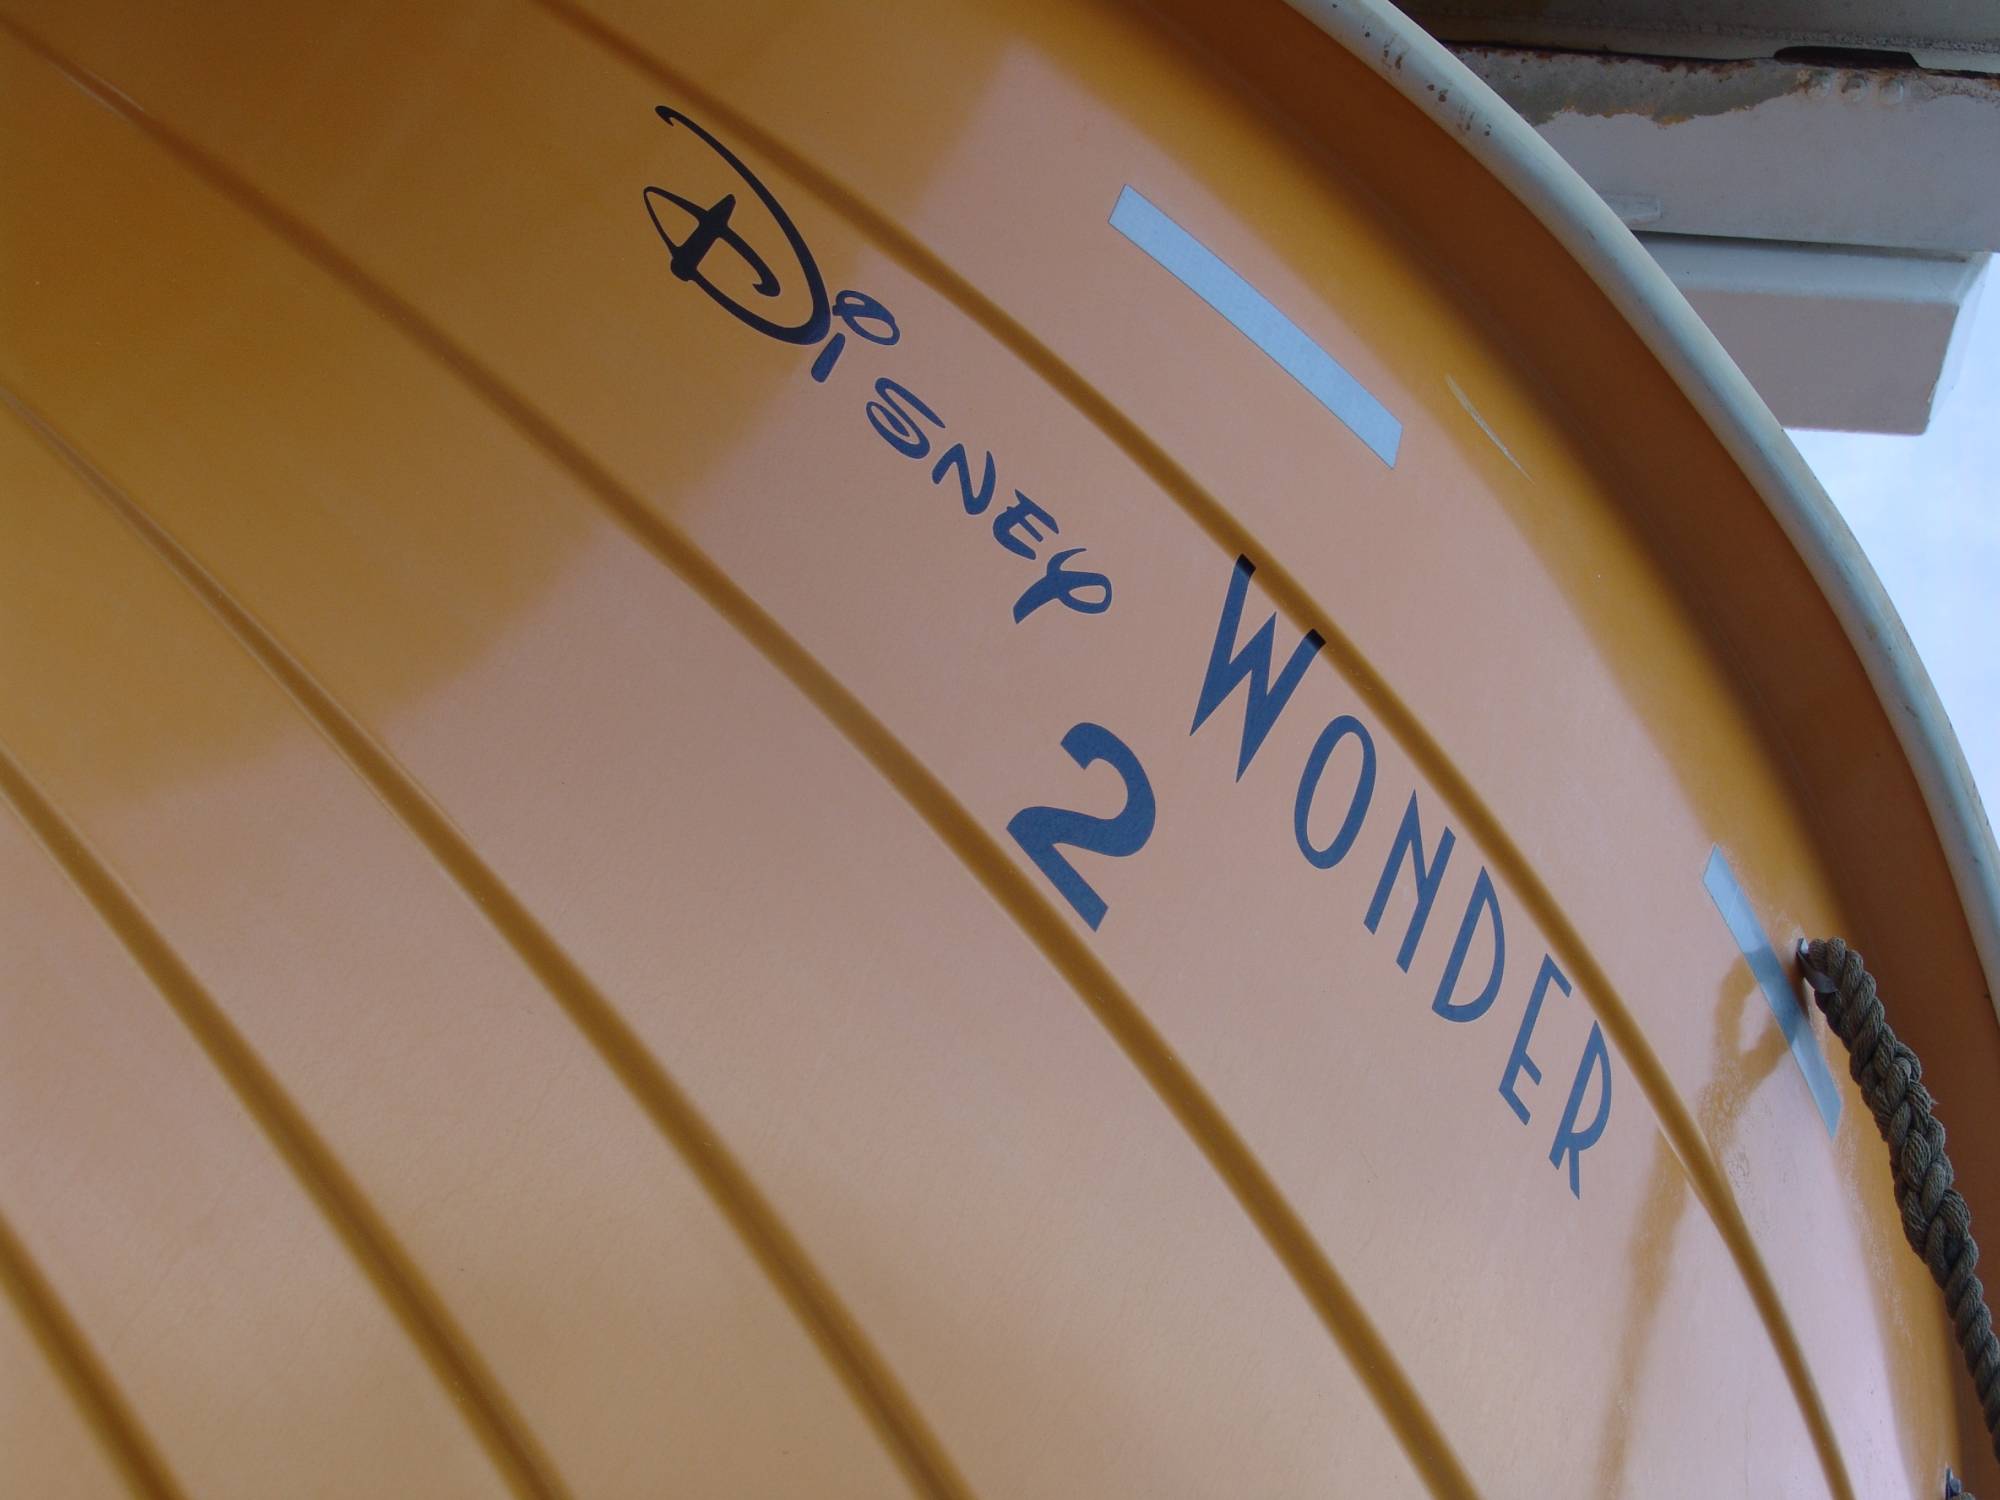 Disney Wonder - lifeboat